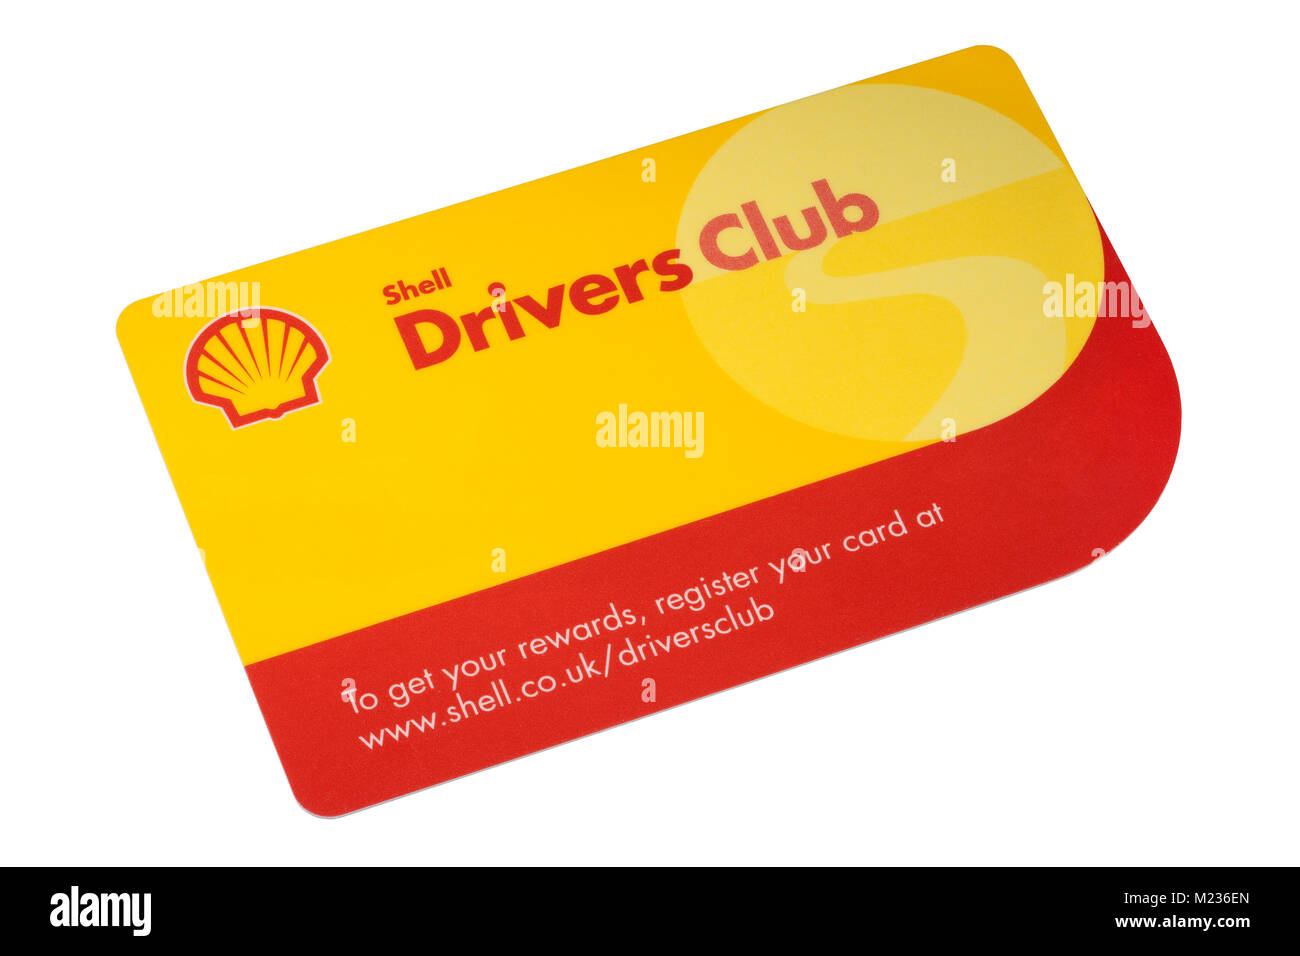 Shell Drivers Club Loyalty Rewards Card aislado sobre un fondo blanco. Foto de stock